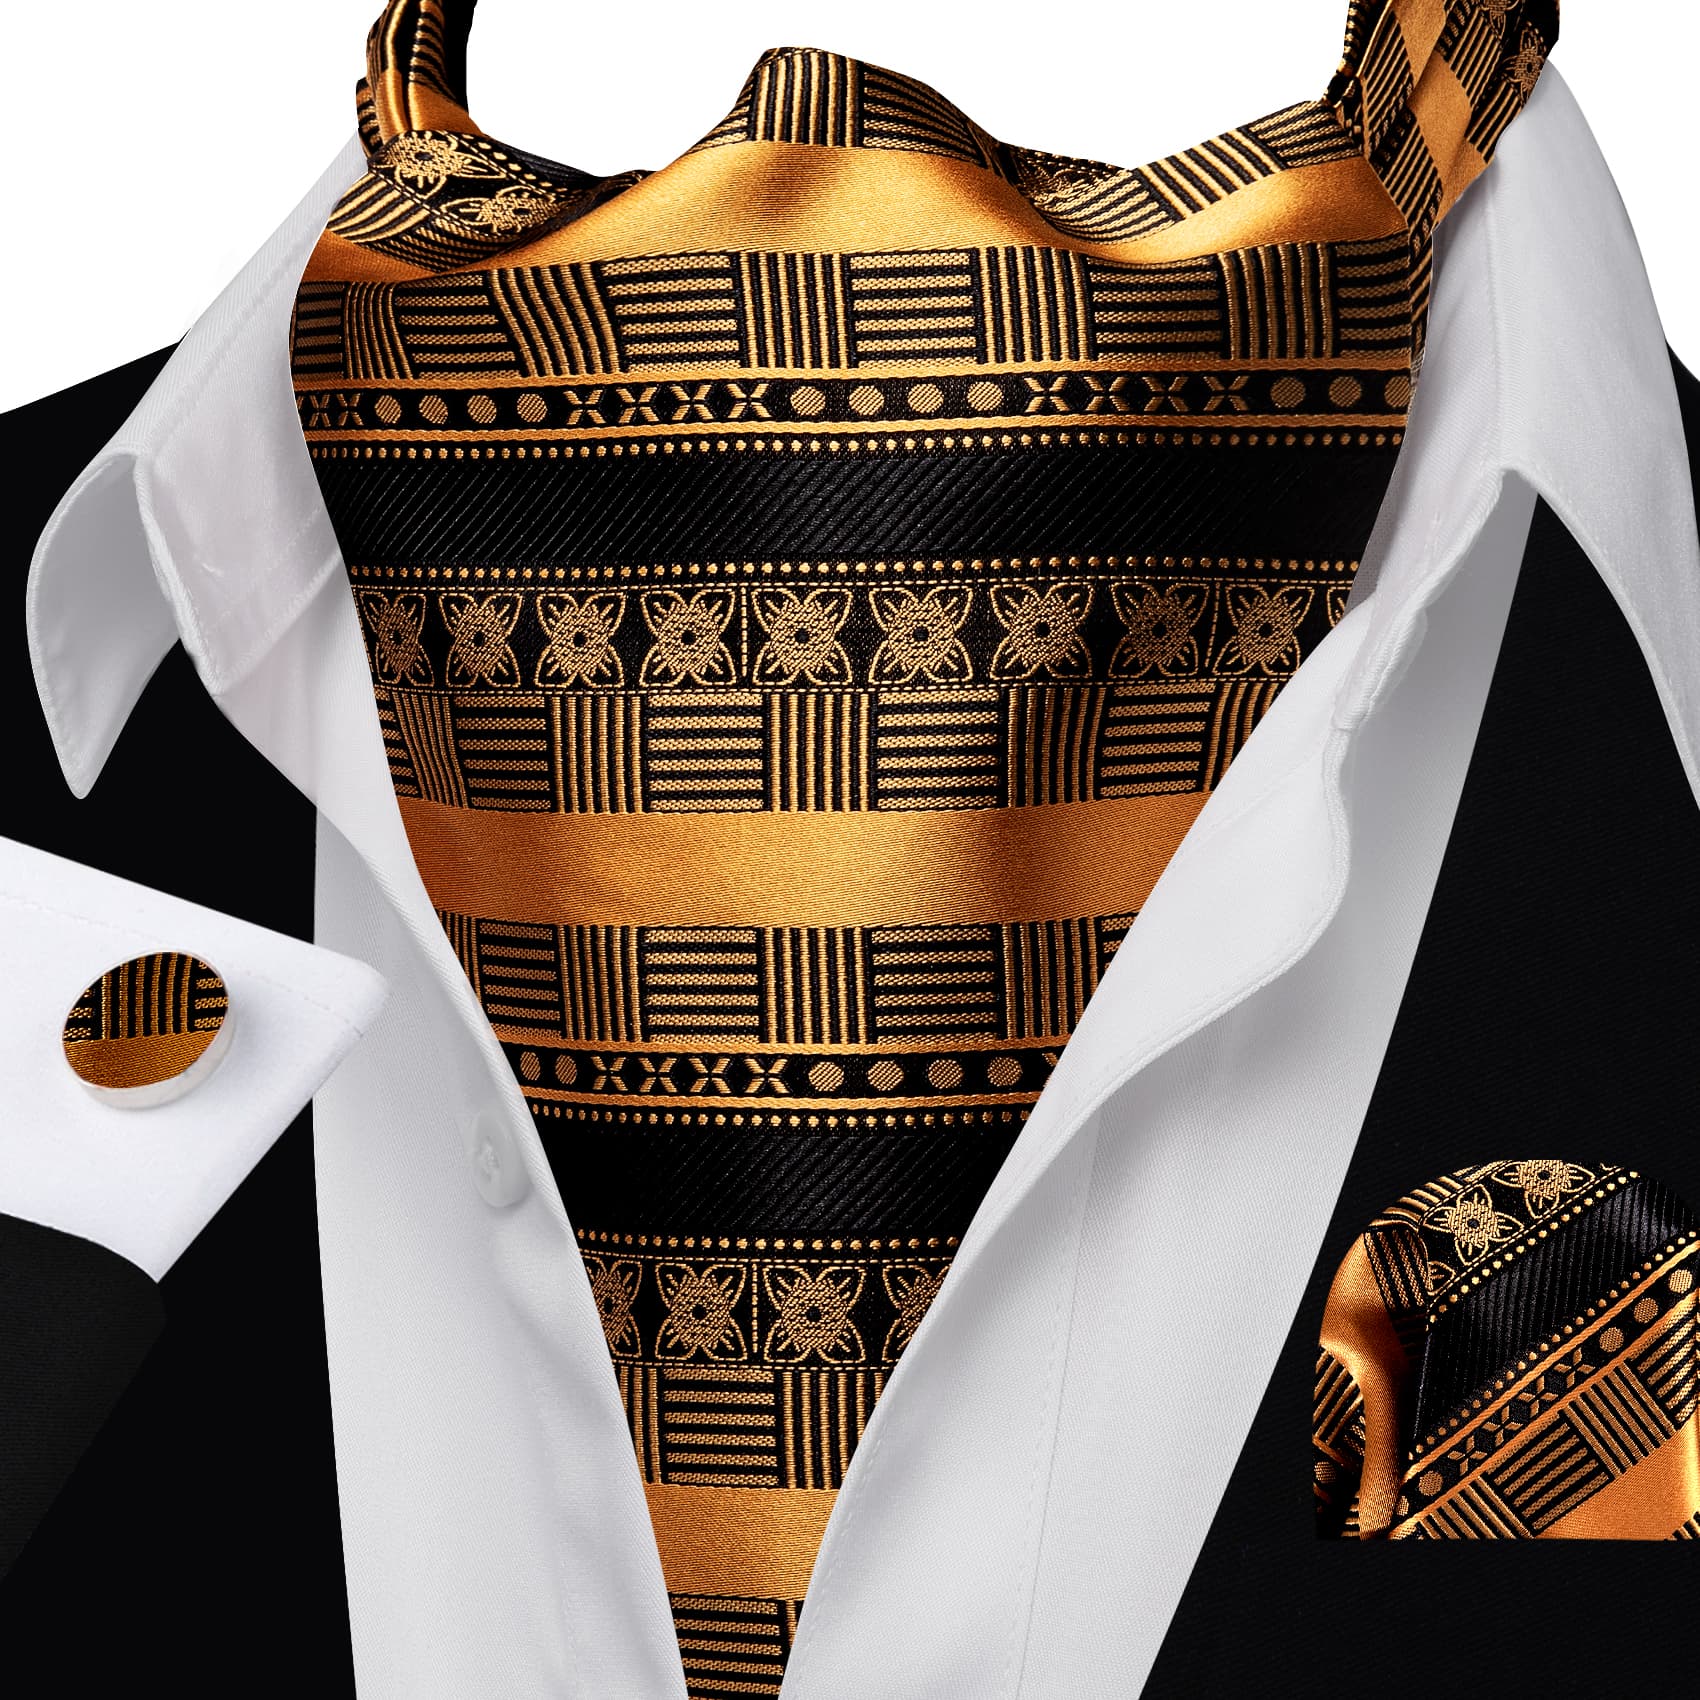 Black suit white shirt Ascot Tie Black GoldEnrod Tie Handkerchief Cufflink Set